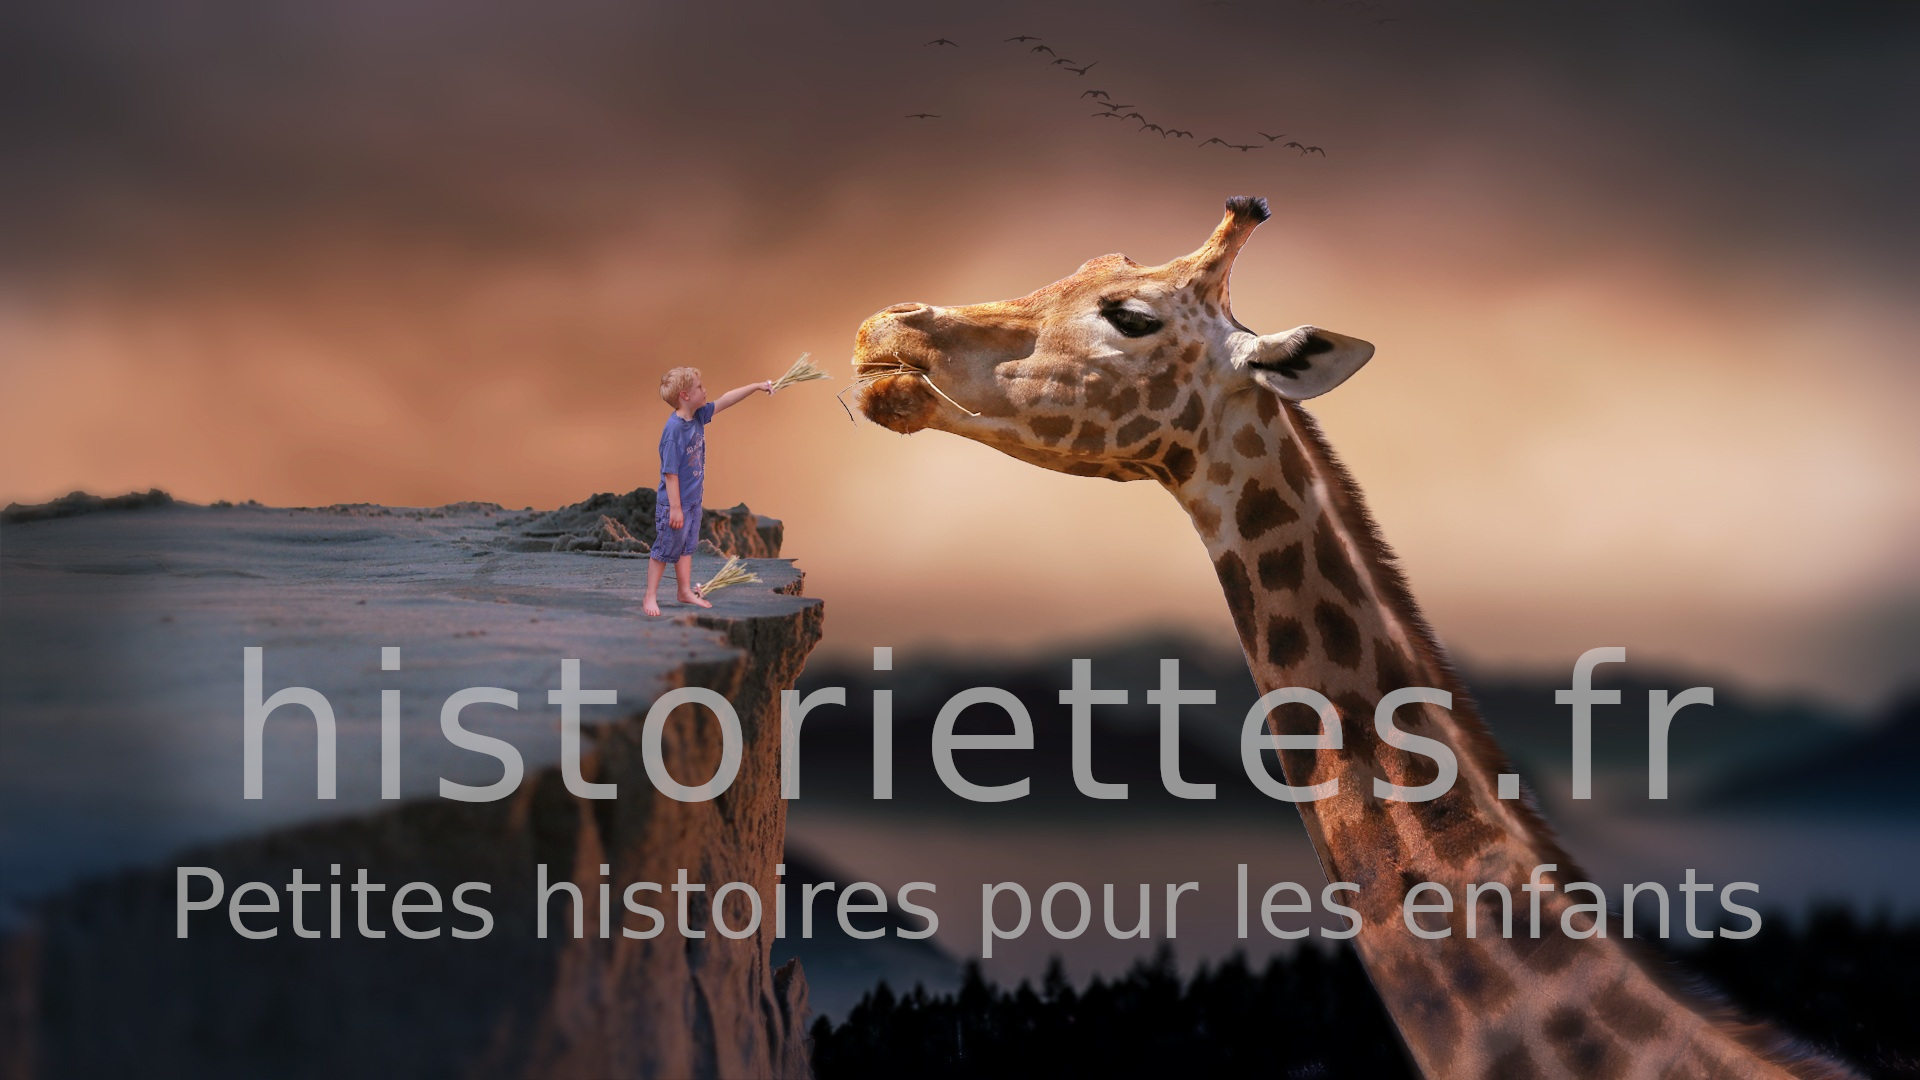 Historiettes.fr - Petites histoires pour les enfants